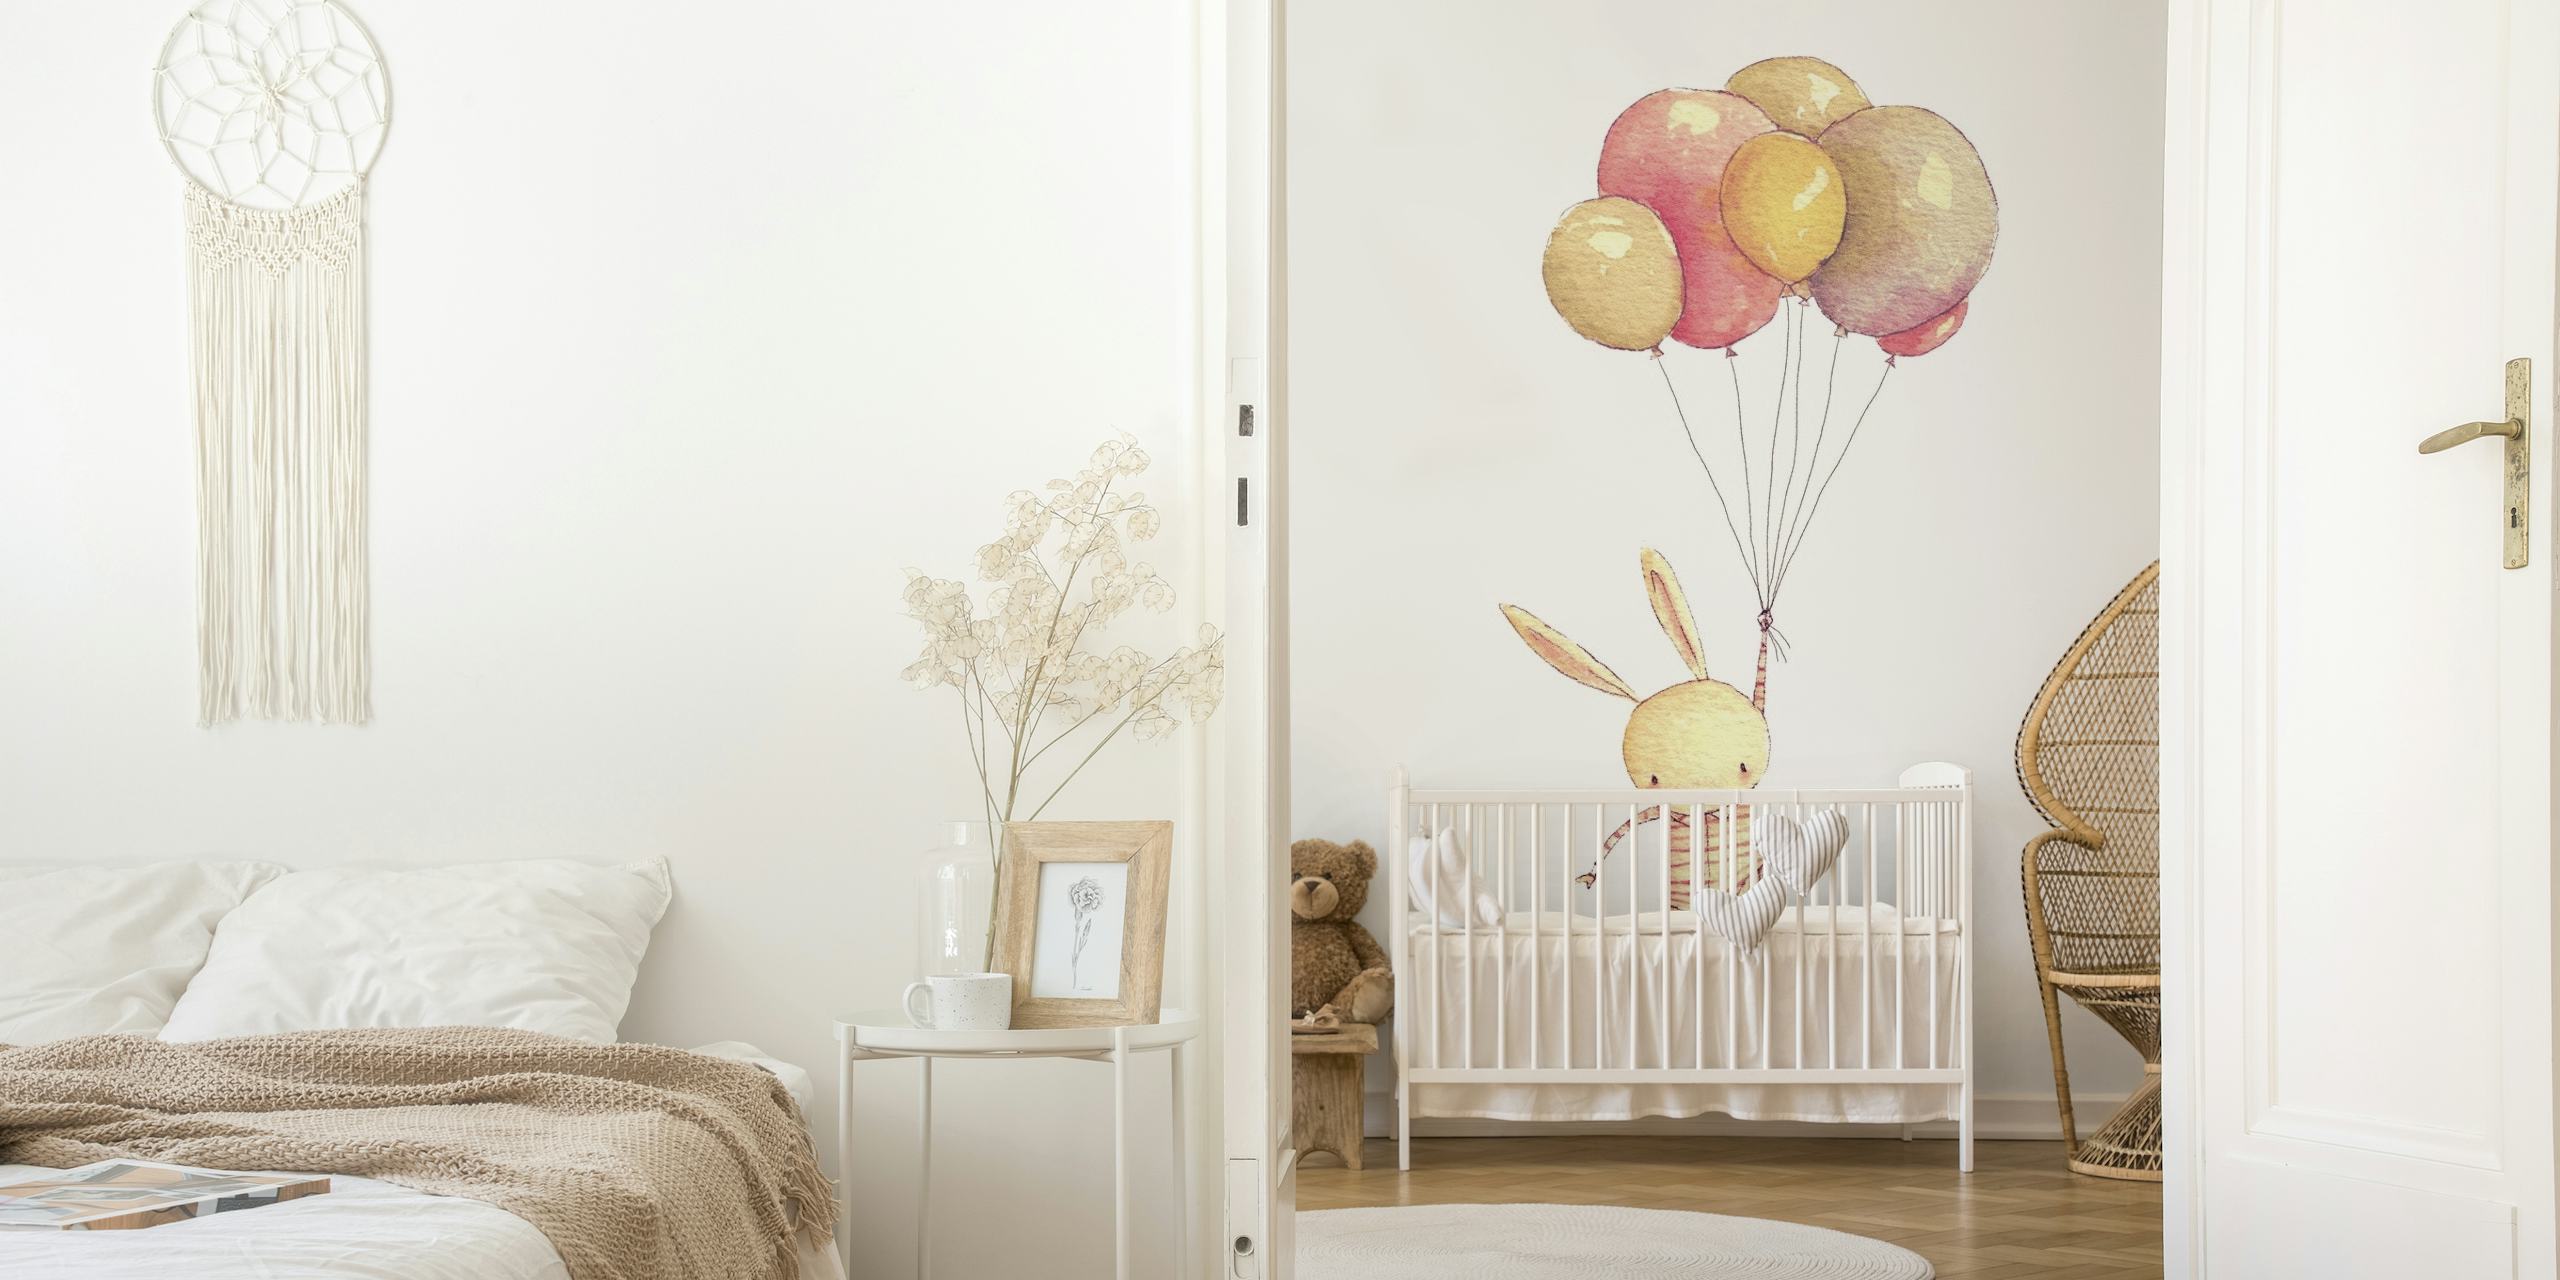 Illustration af en kanin bundet til pastelballoner, der flyder opad i et vægmaleri.